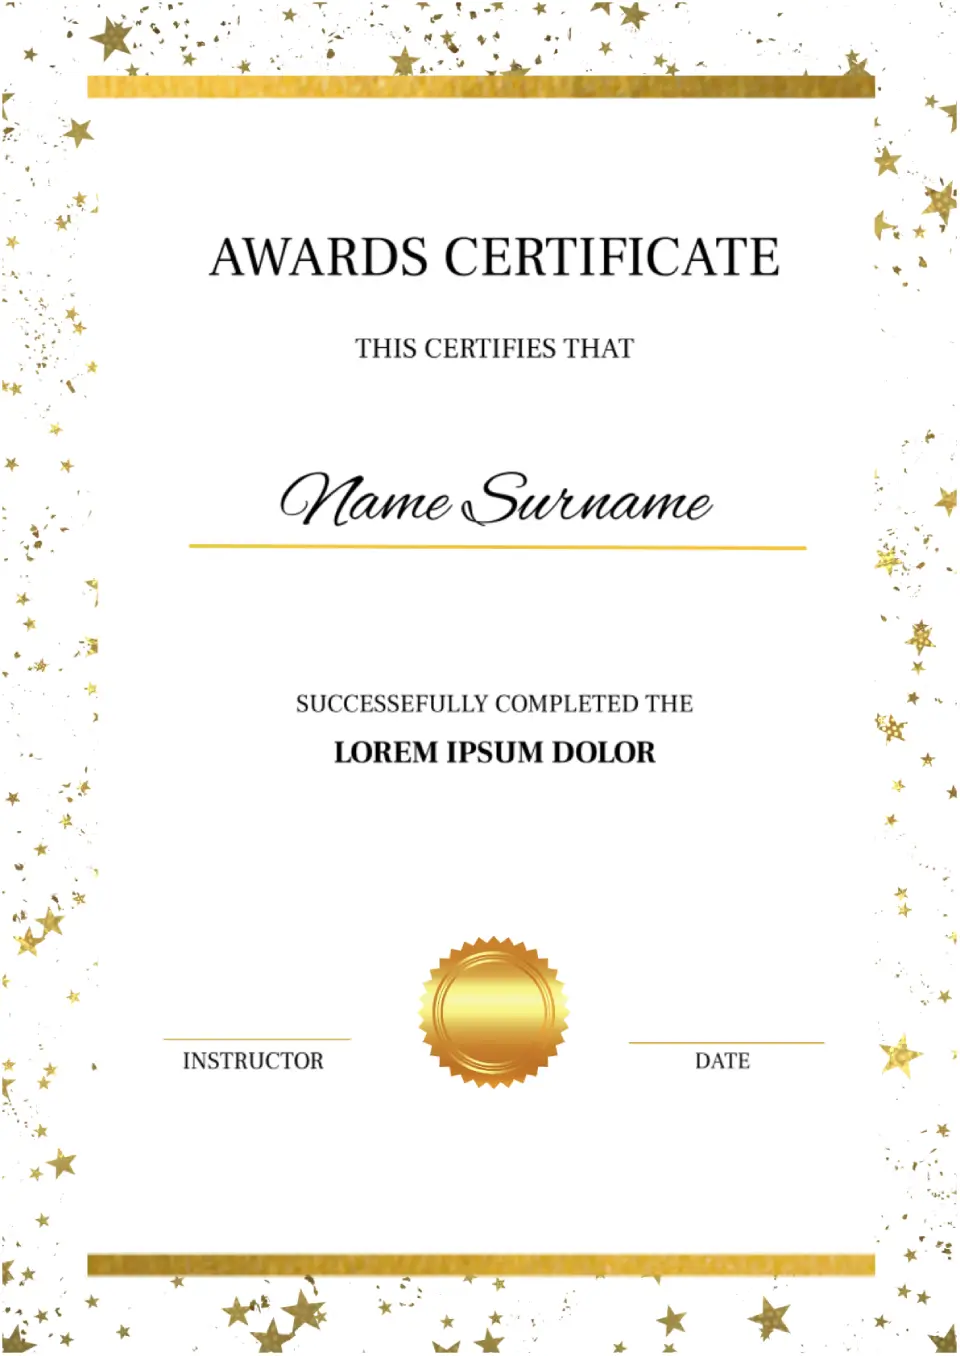 Awards Certificate Template